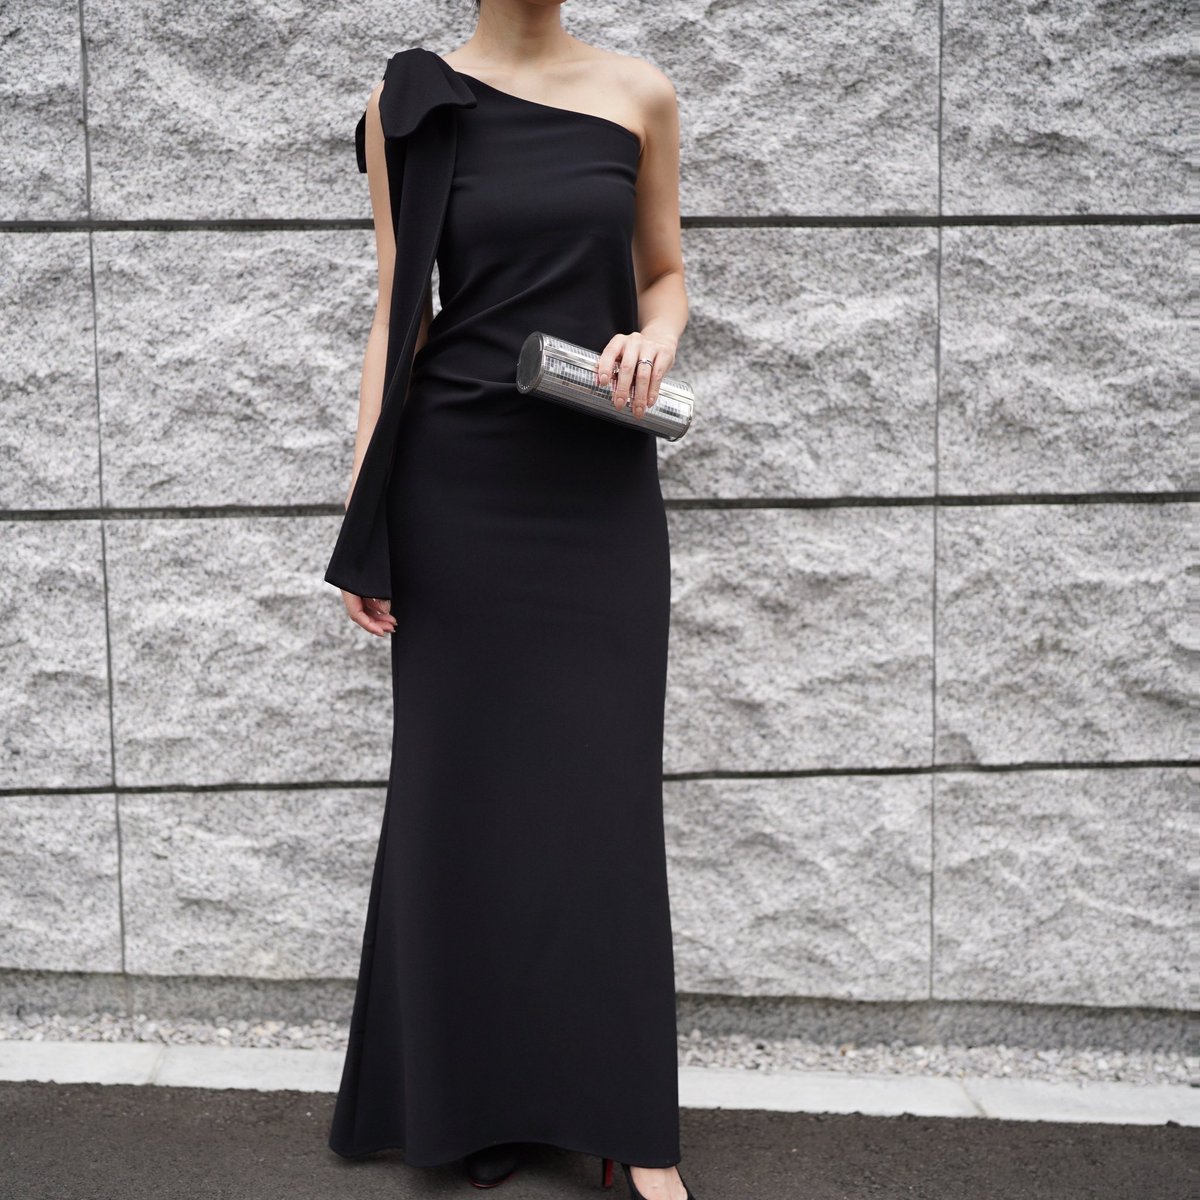 肩にリボンがあしらわれた、タイトなワンショルダーブラックドレス。ウエスト部分は少し高めの位置でドレープデザインになっており、身体のラインを美しく見せてくれます。

Dress #yokochan
#ヨーコチャン

the-dress.co/products/detai…